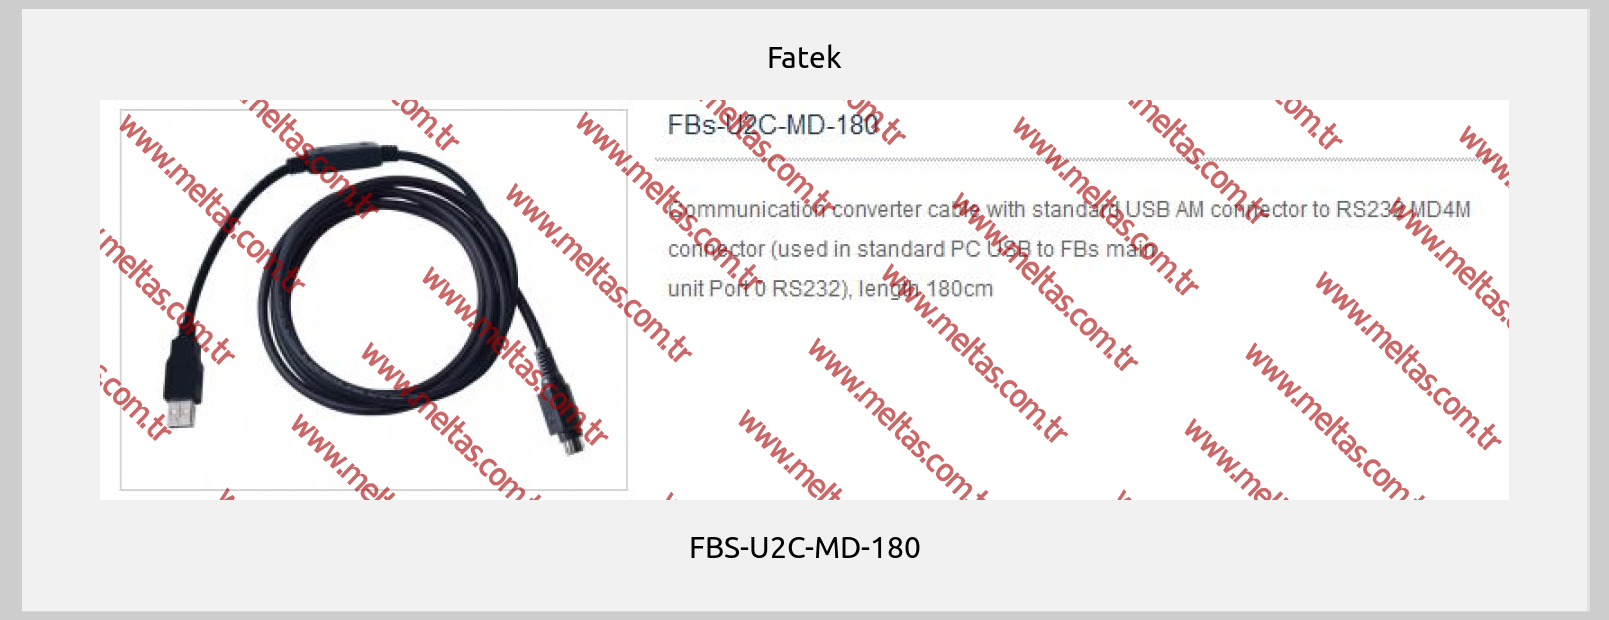 Fatek - FBS-U2C-MD-180